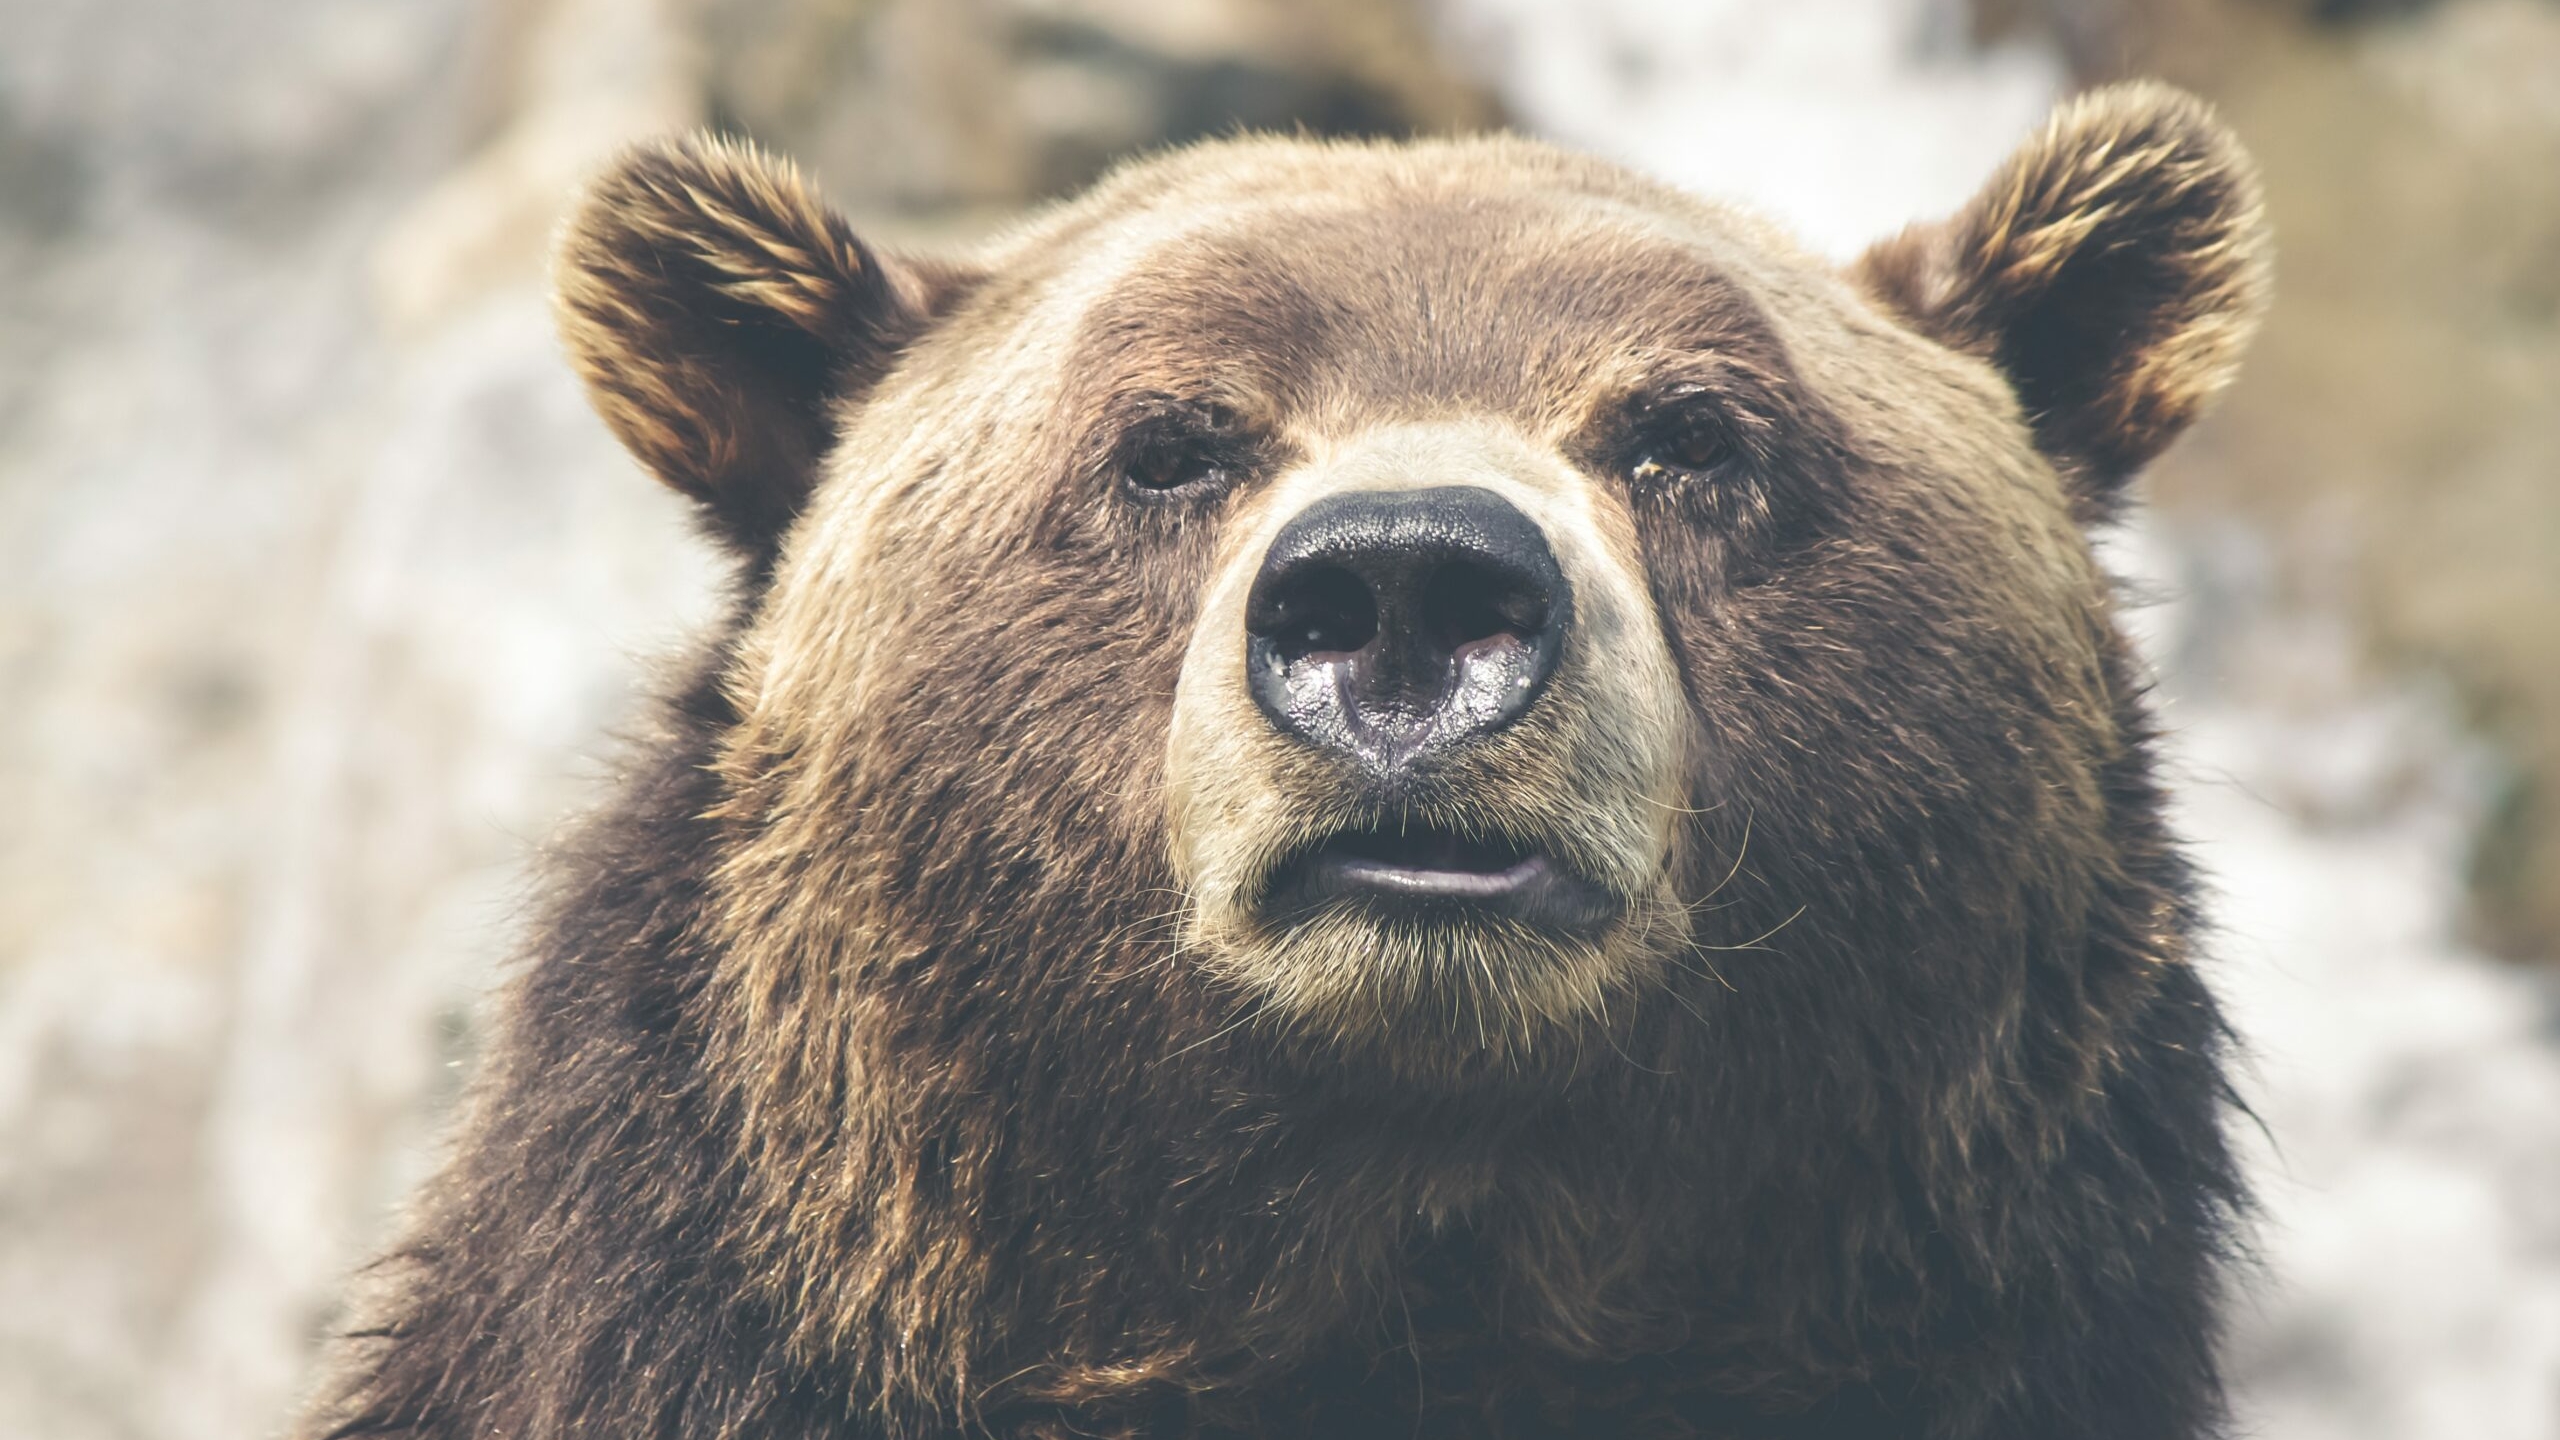 “Угостил косолапого”: в Сети появилось видео с кормящим медведя хабаровчанином